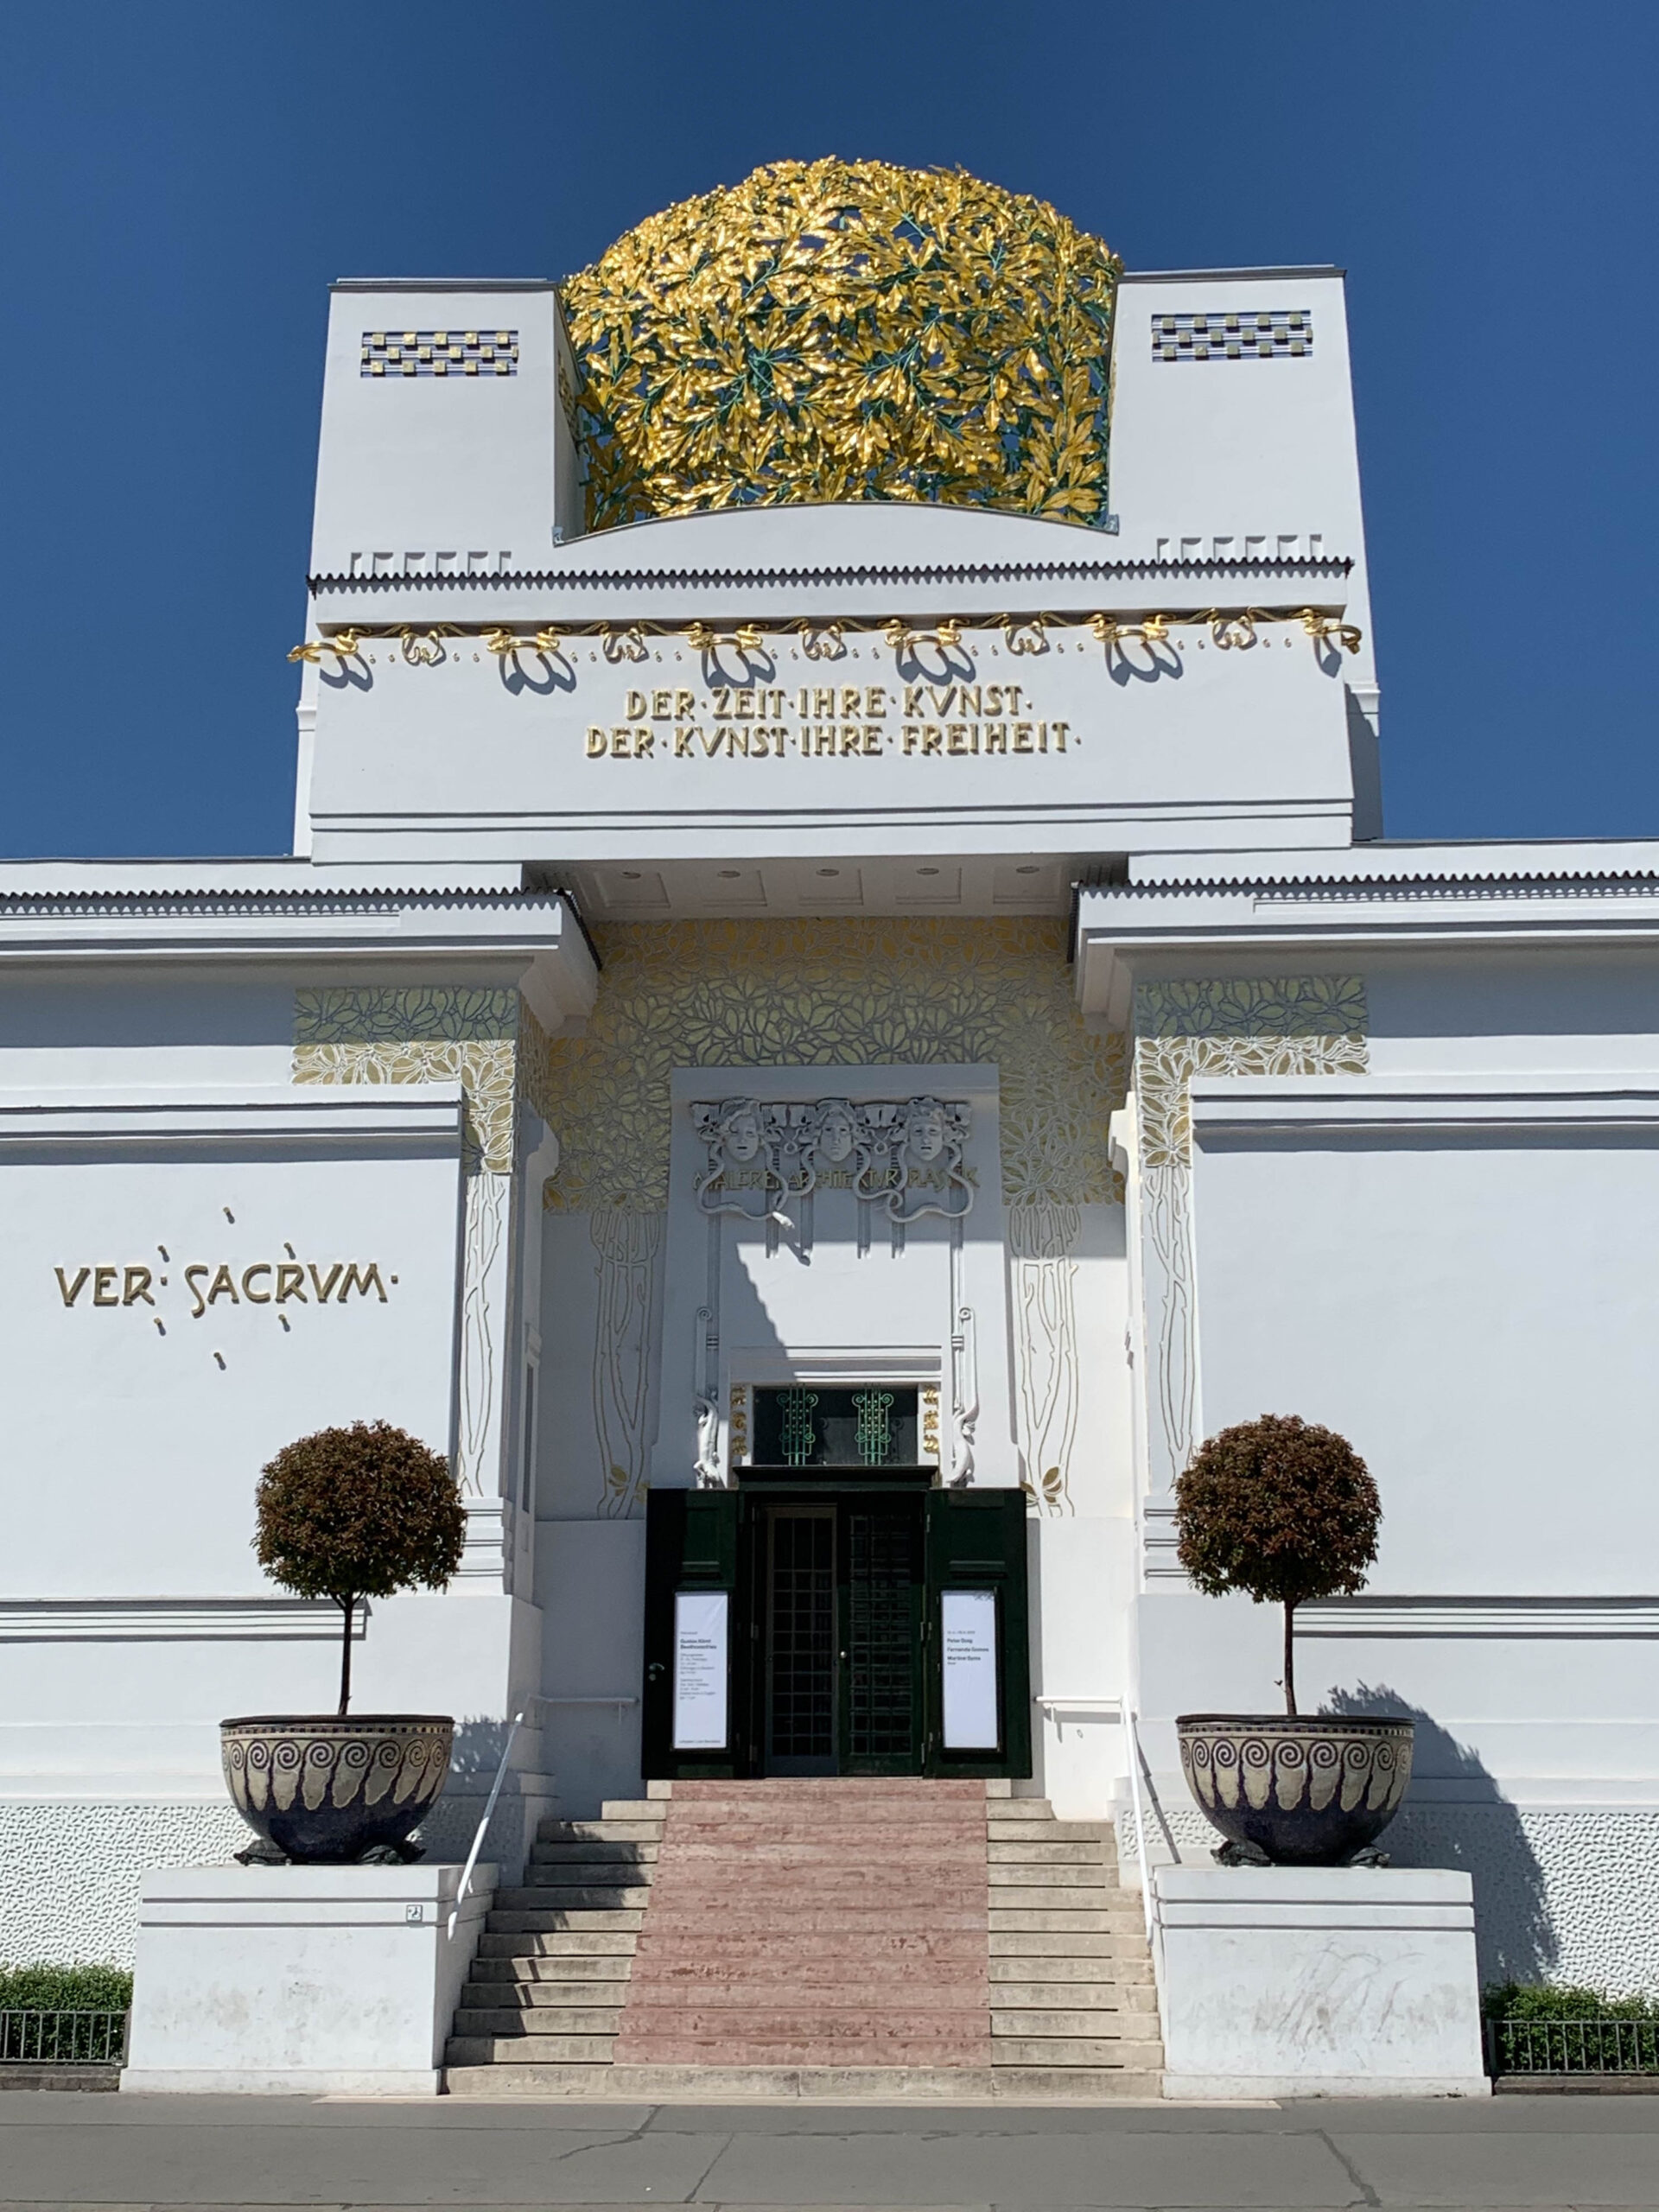 Ausstellungsgebäude der Wiener Secession, 1897-1898. Architekt: Joseph Maria Olbrich